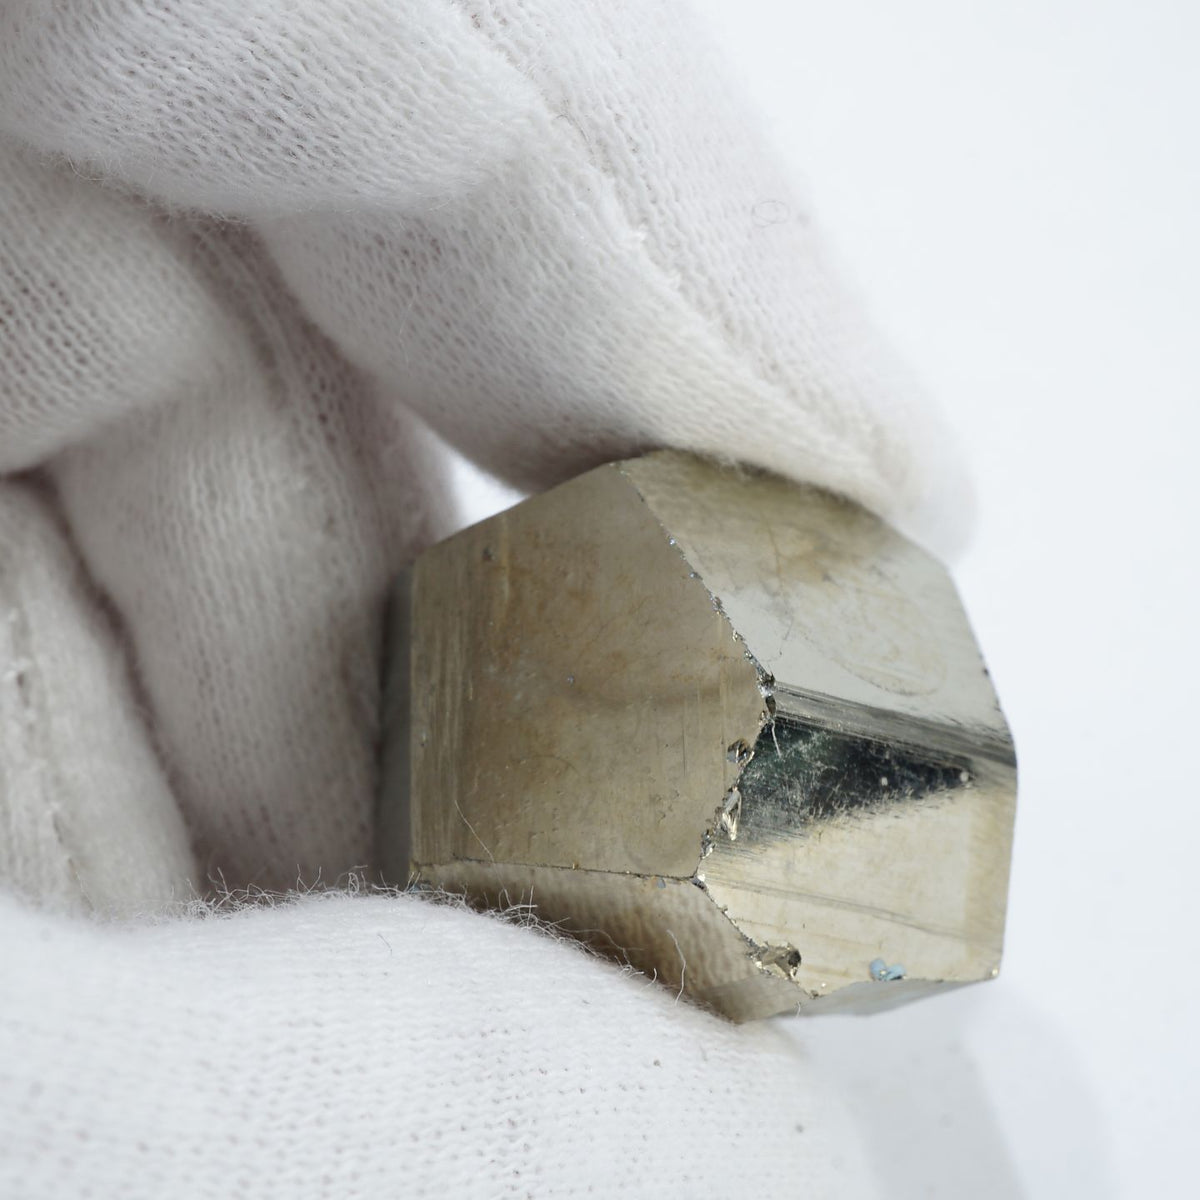 スペイン産 パイライト (黄鉄鉱）結晶 約25g – 天然石ハッピーギフト